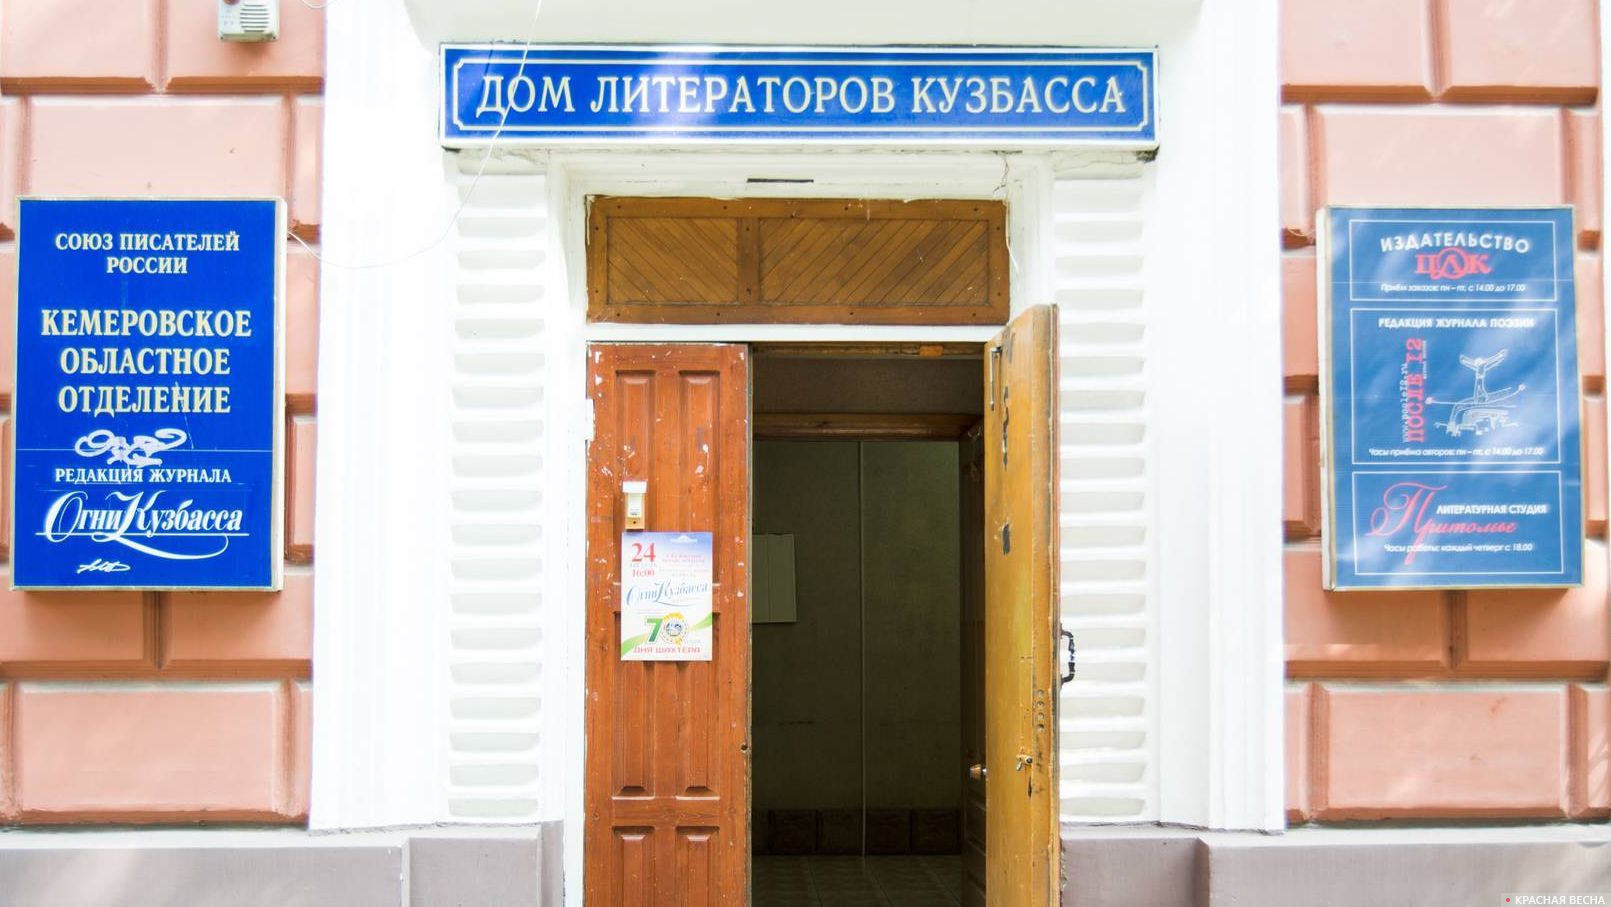 Дом литераторов Кузбасса. Кемерово